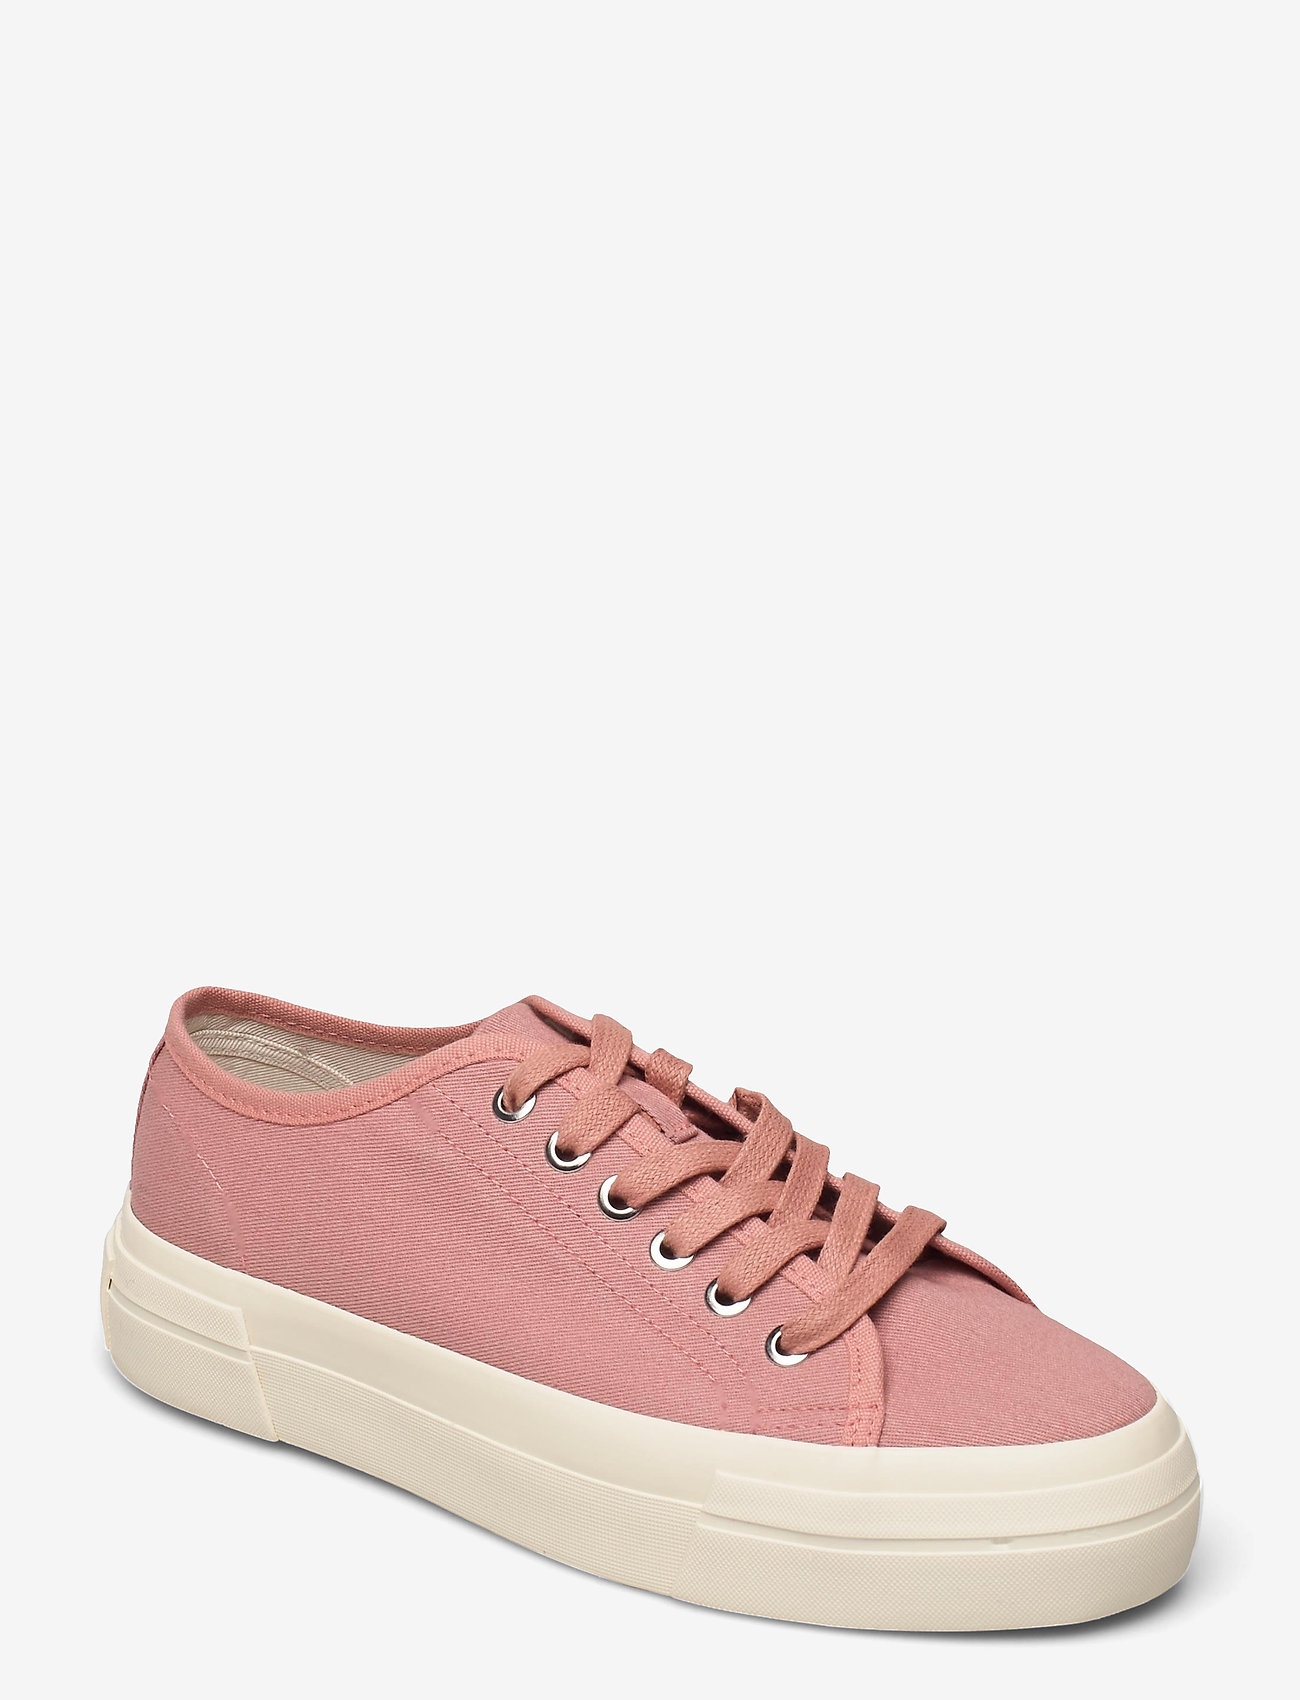 VAGABOND - TEDDIE W - ikdienas apavi ar pazeminātu augšdaļu - dusty pink - 0